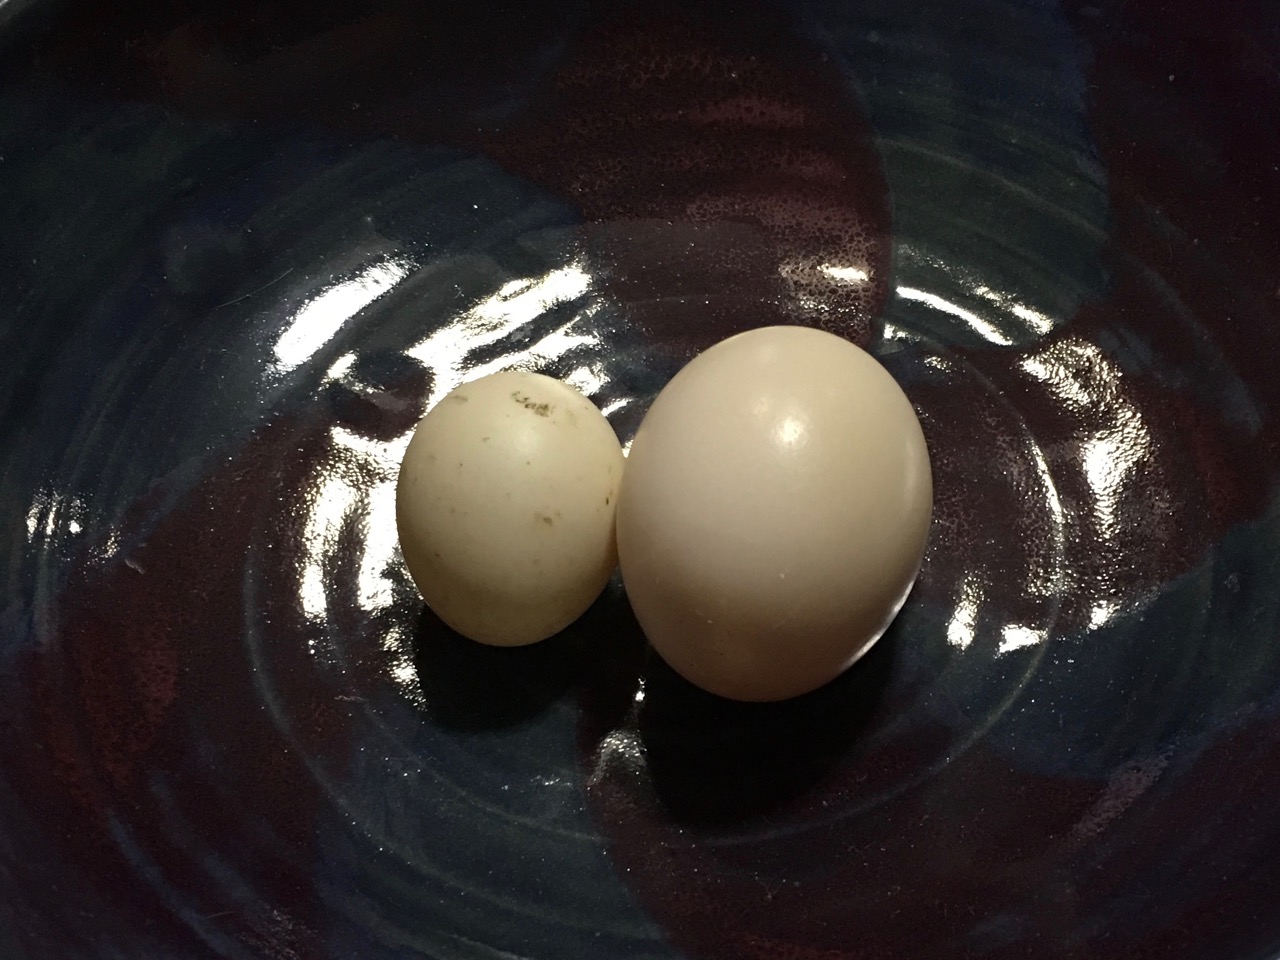 Strange Eggs